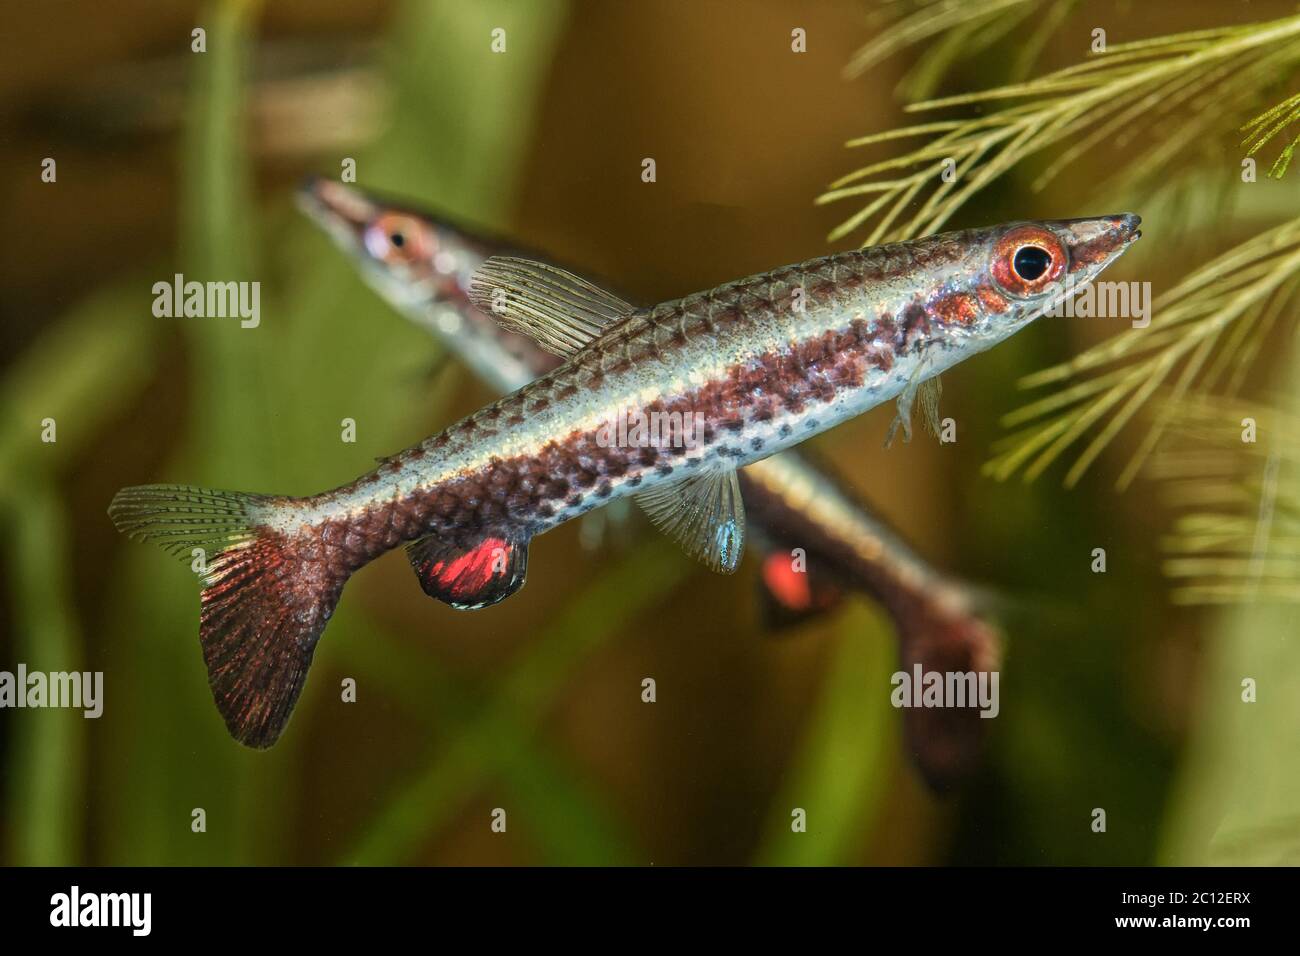 Portrait of pencil fish (Nannostomus eques) in aquarium Stock Photo